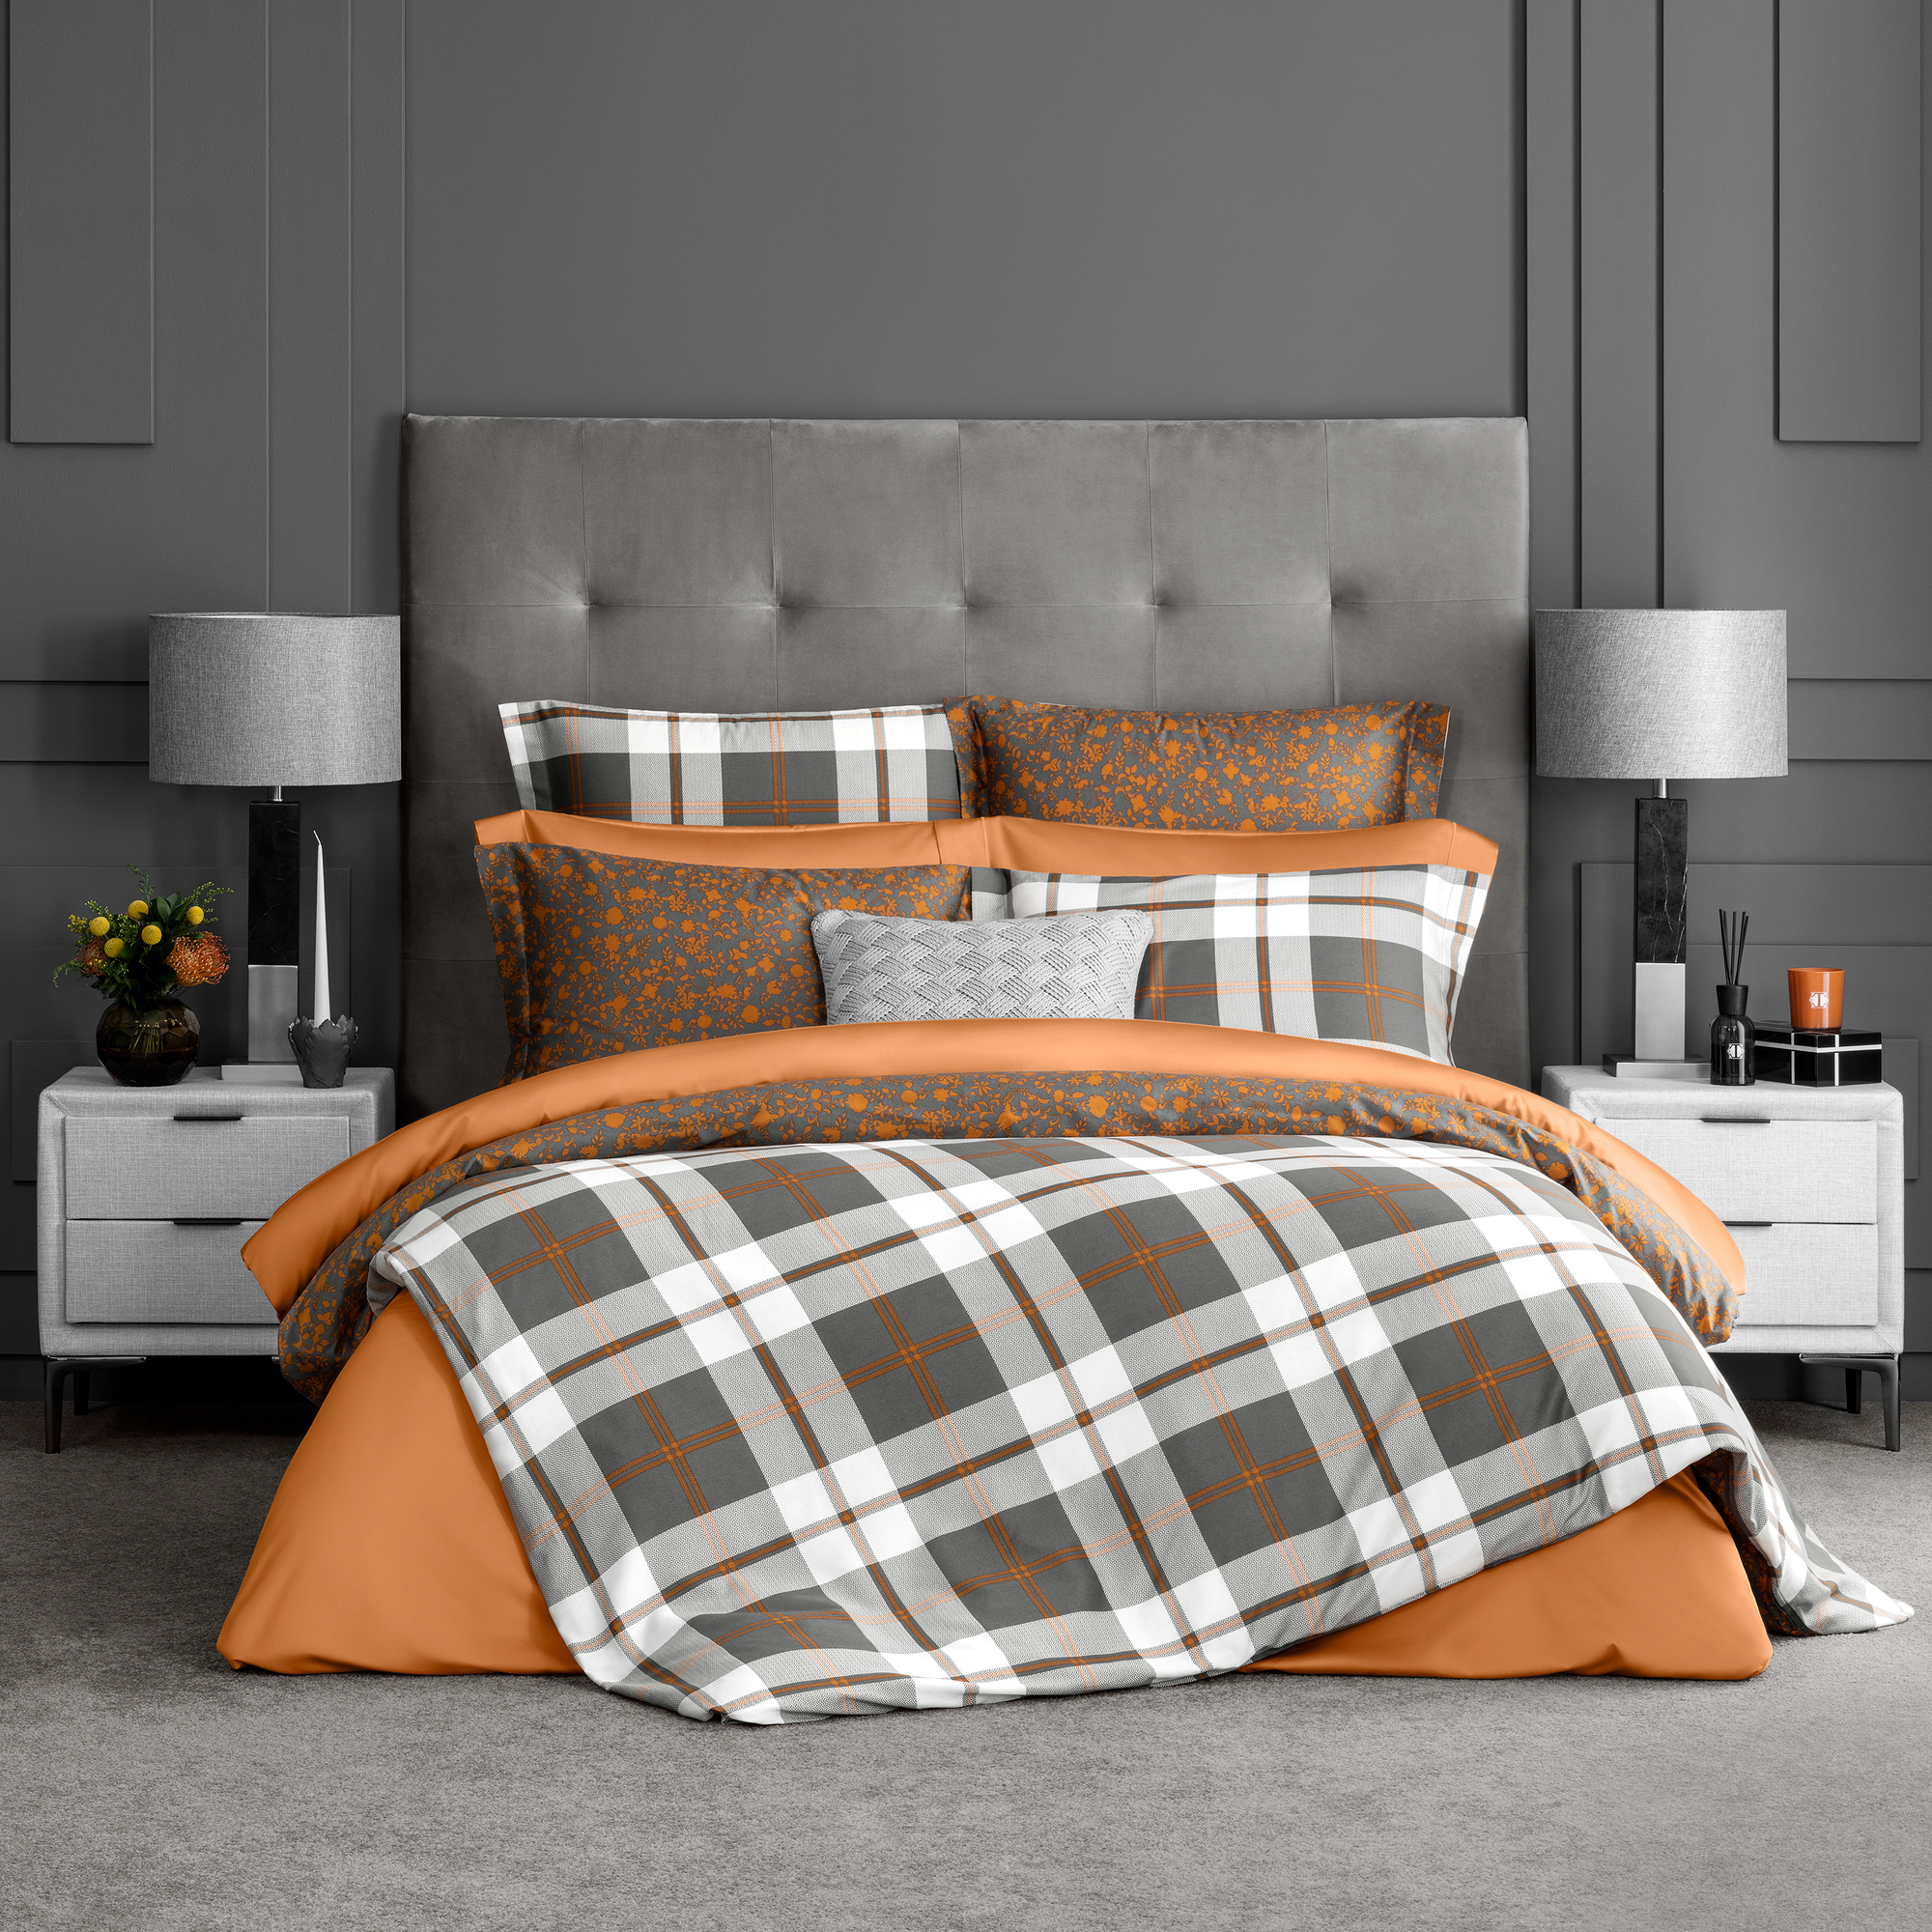 Комплект постельного белья Togas Корли Полуторный Серый/Оранжевый, размер Полуторный